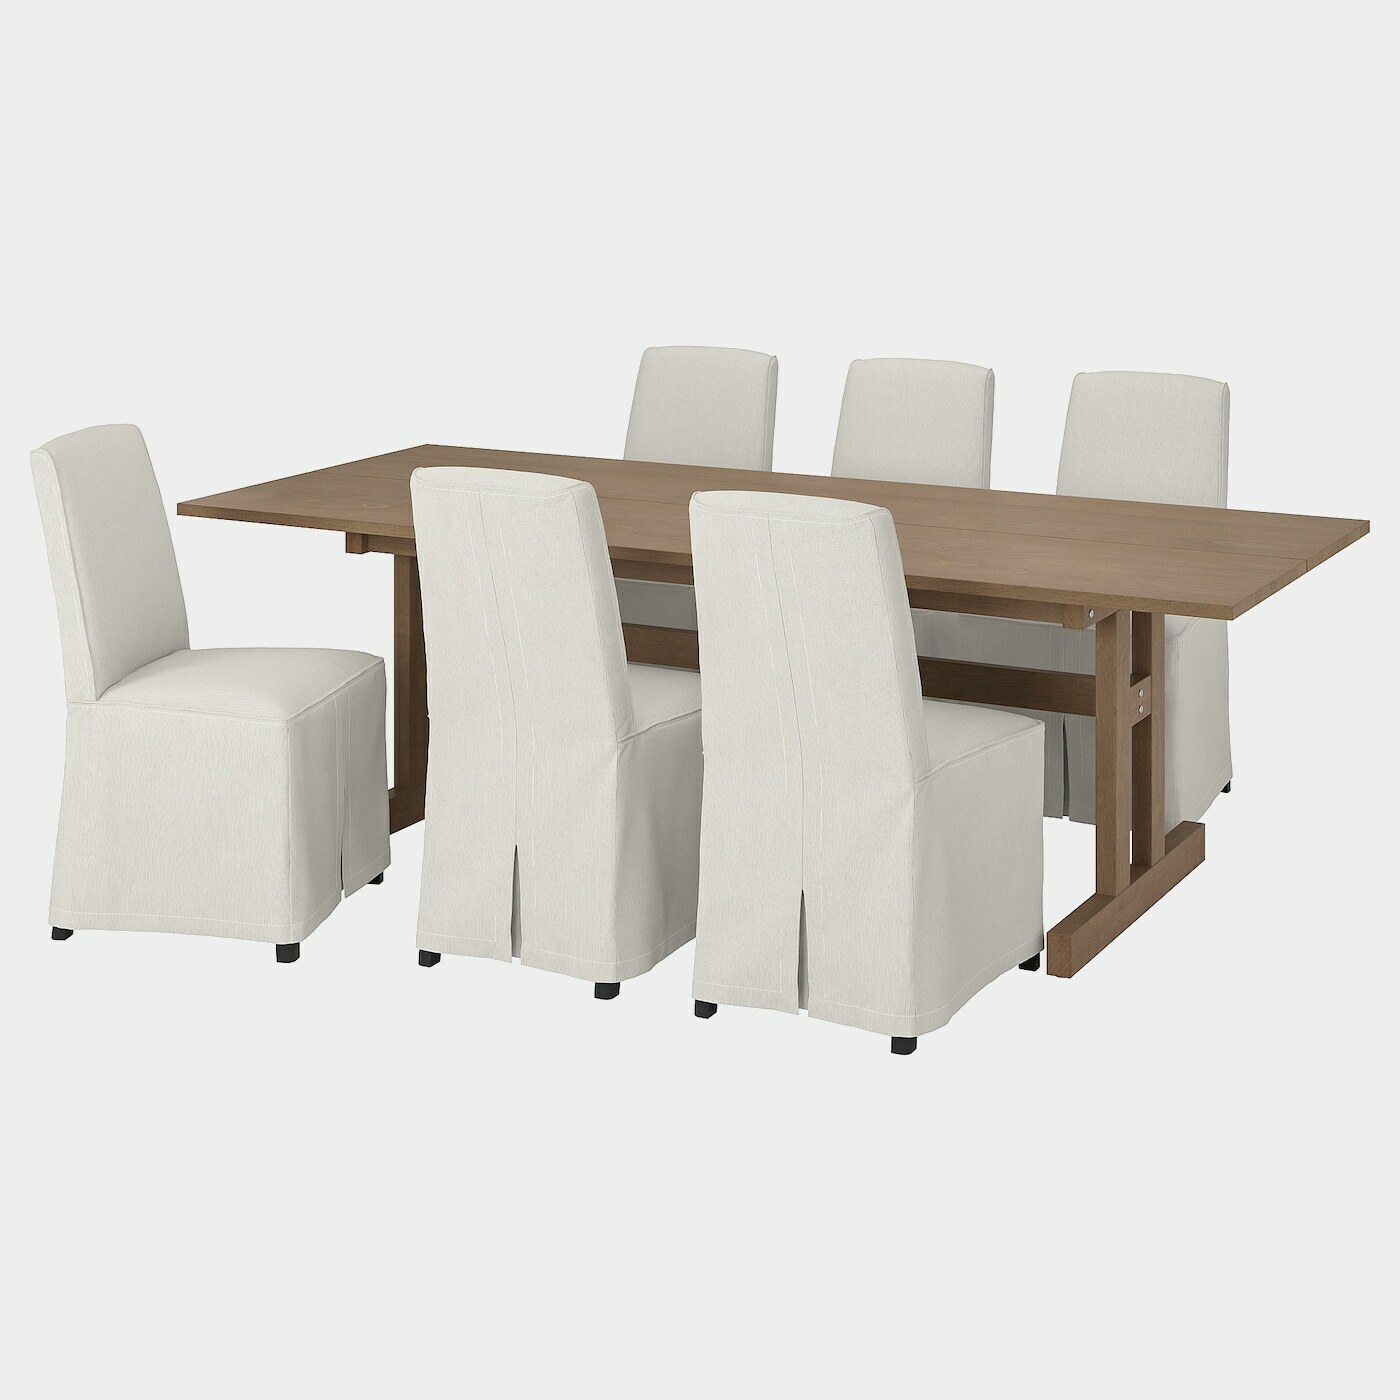 KLIMPFJÄLL / BERGMUND Tisch und 6 Stühle  -  - Möbel Ideen für dein Zuhause von Home Trends. Möbel Trends von Social Media Influencer für dein Skandi Zuhause.